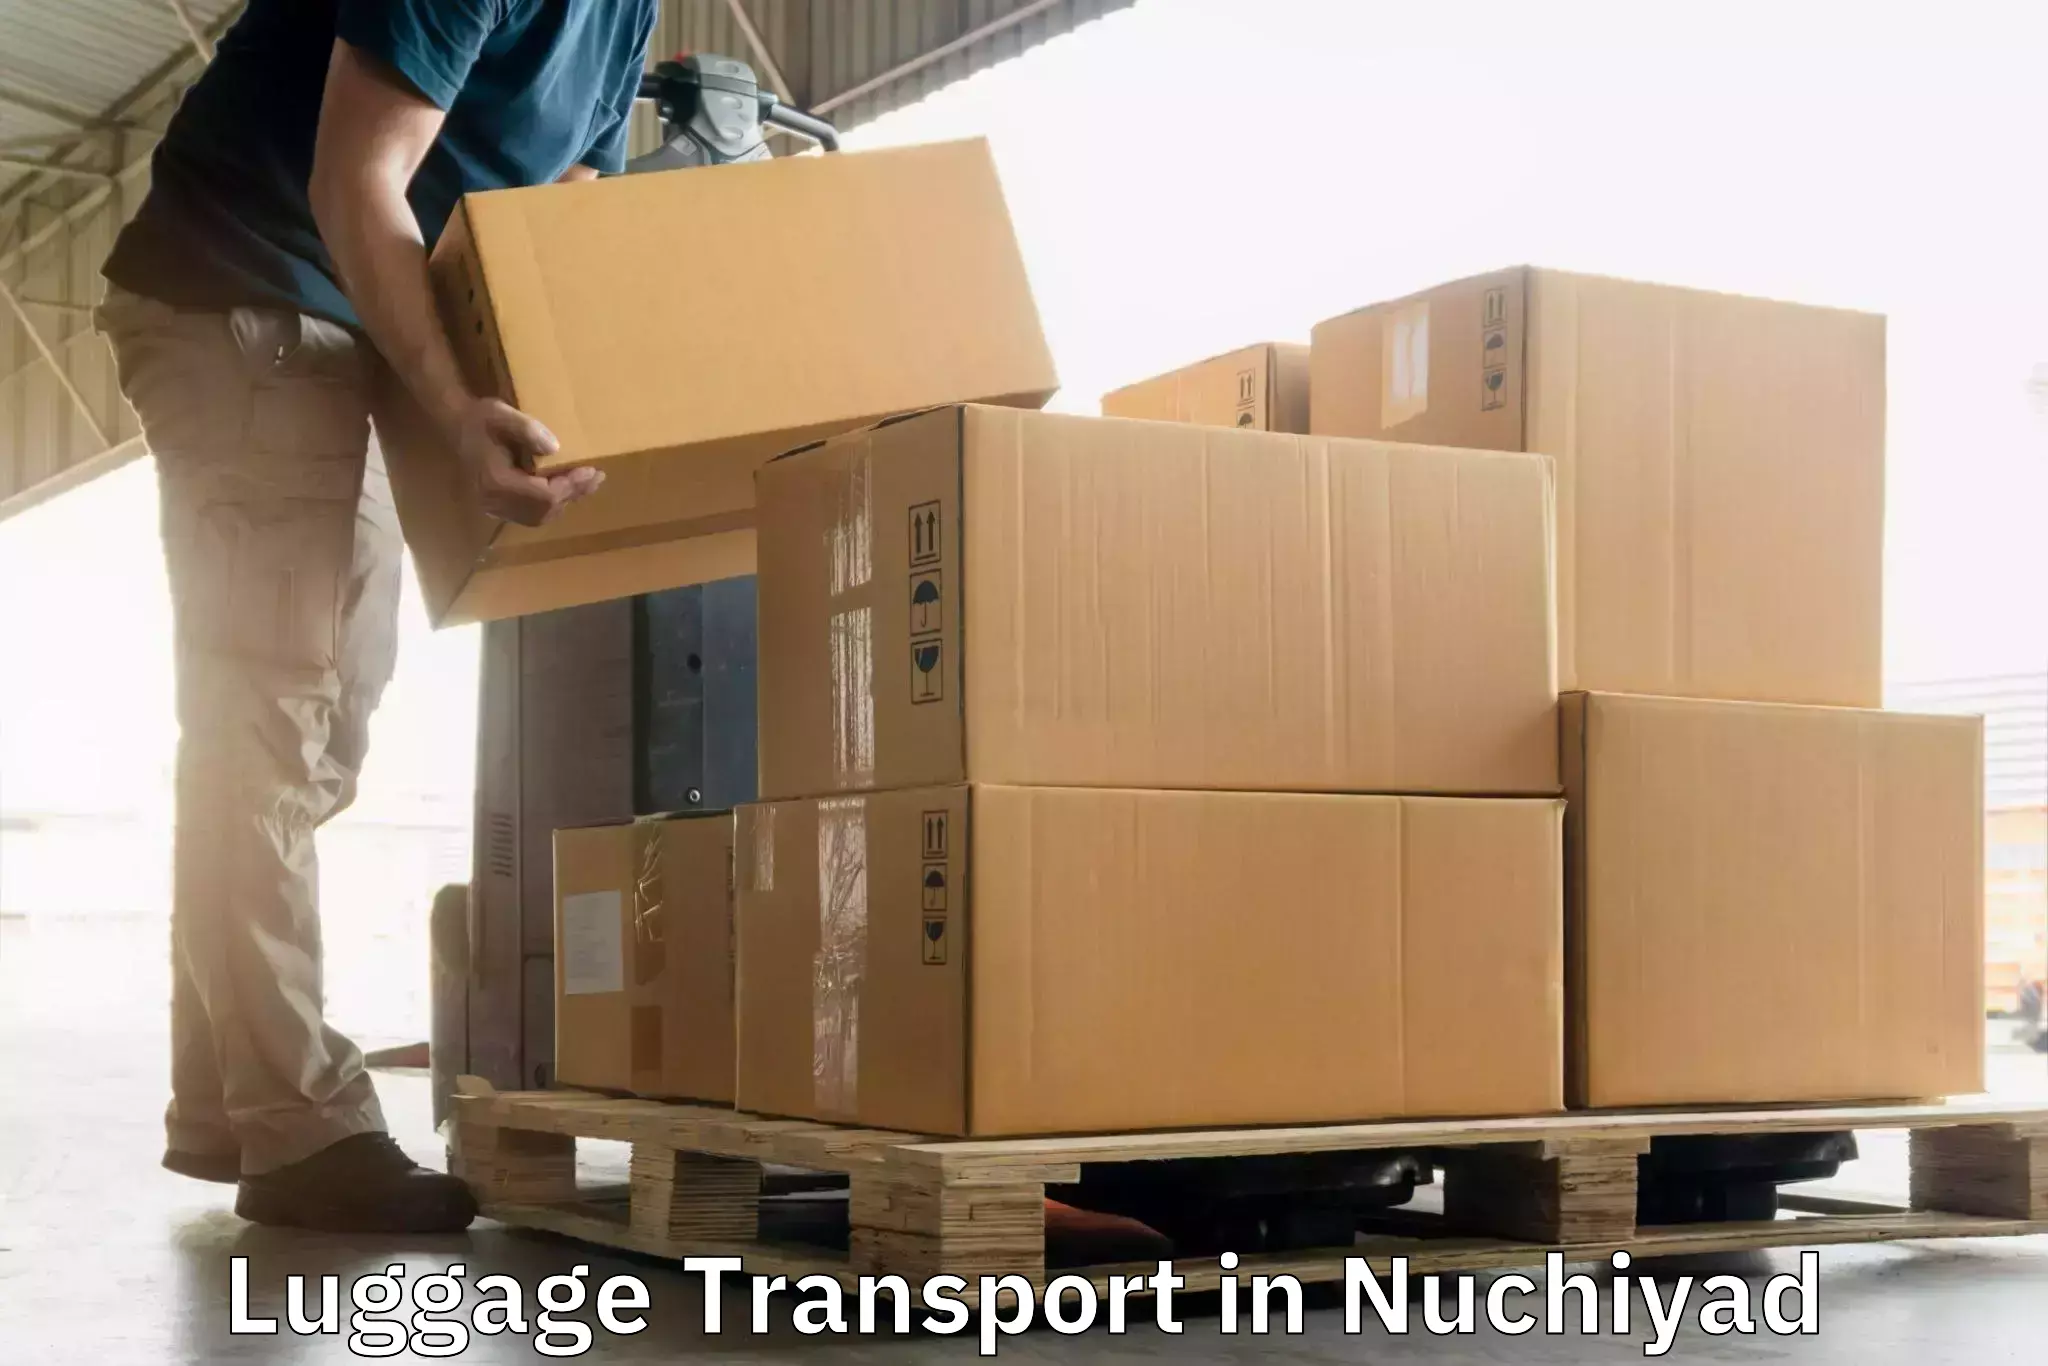 Baggage transport network in Nuchiyad